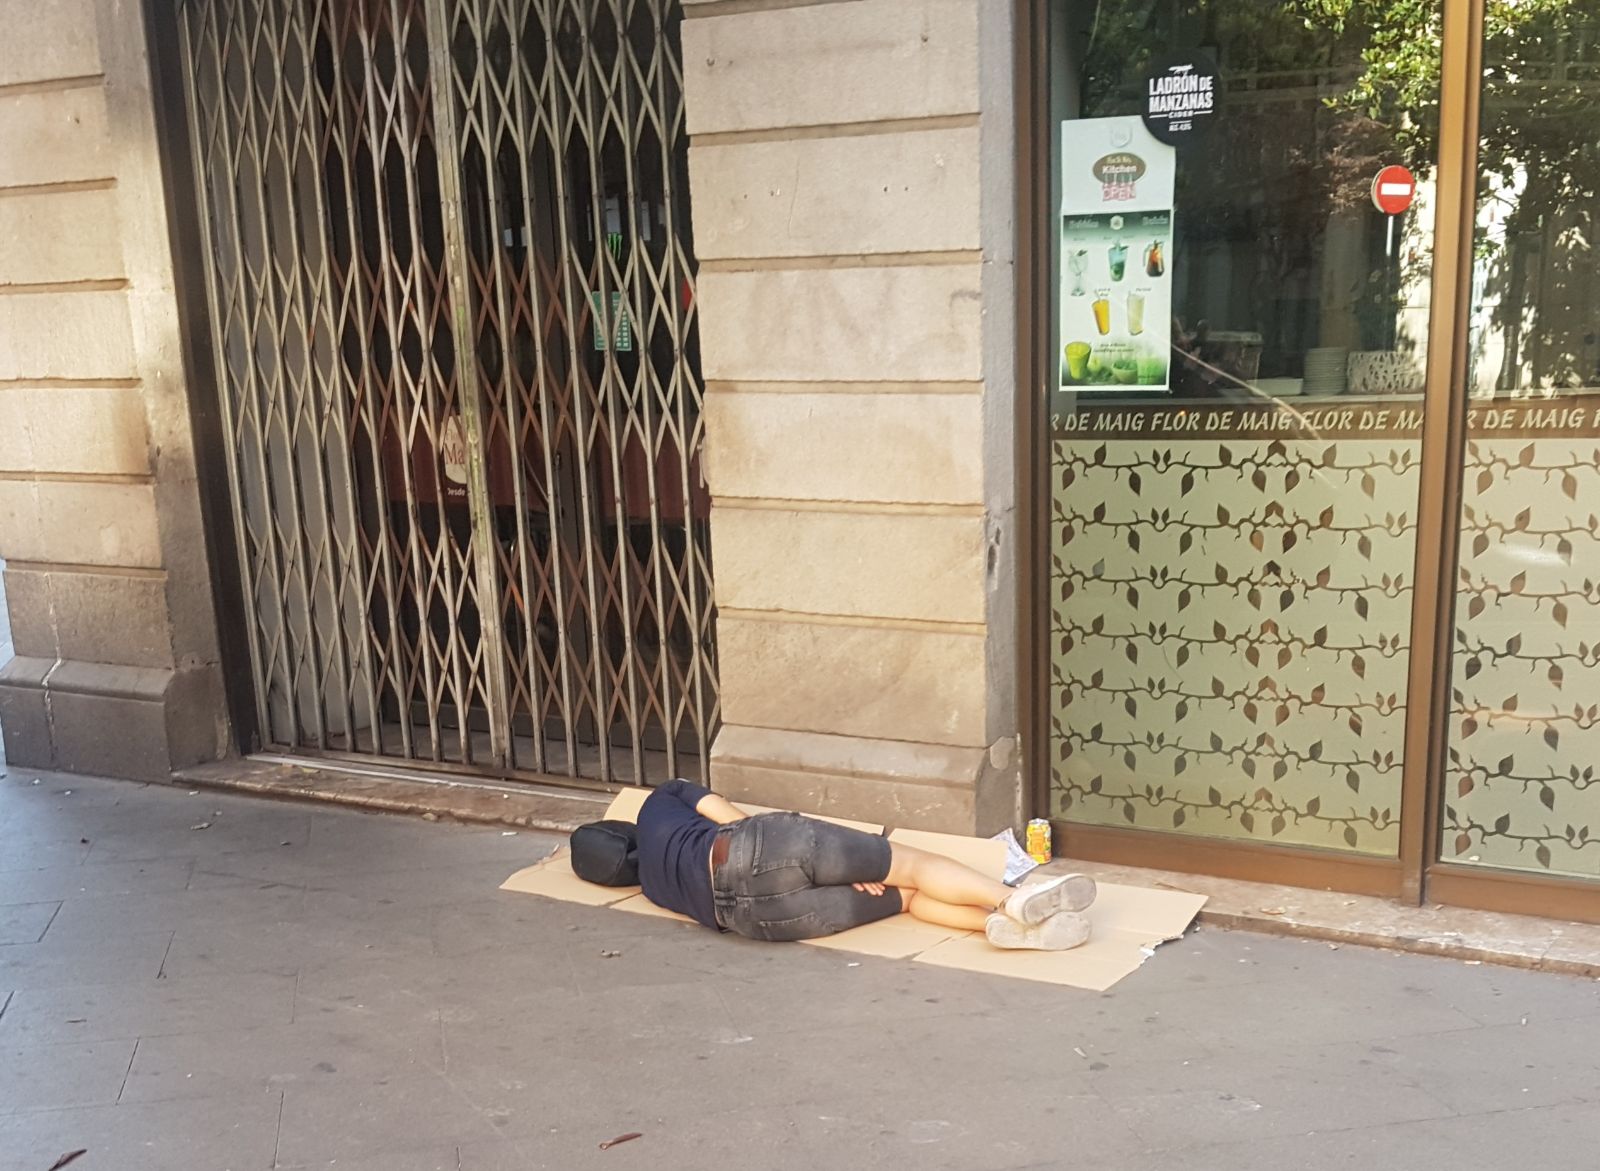 gente durmiendo calle arrabal